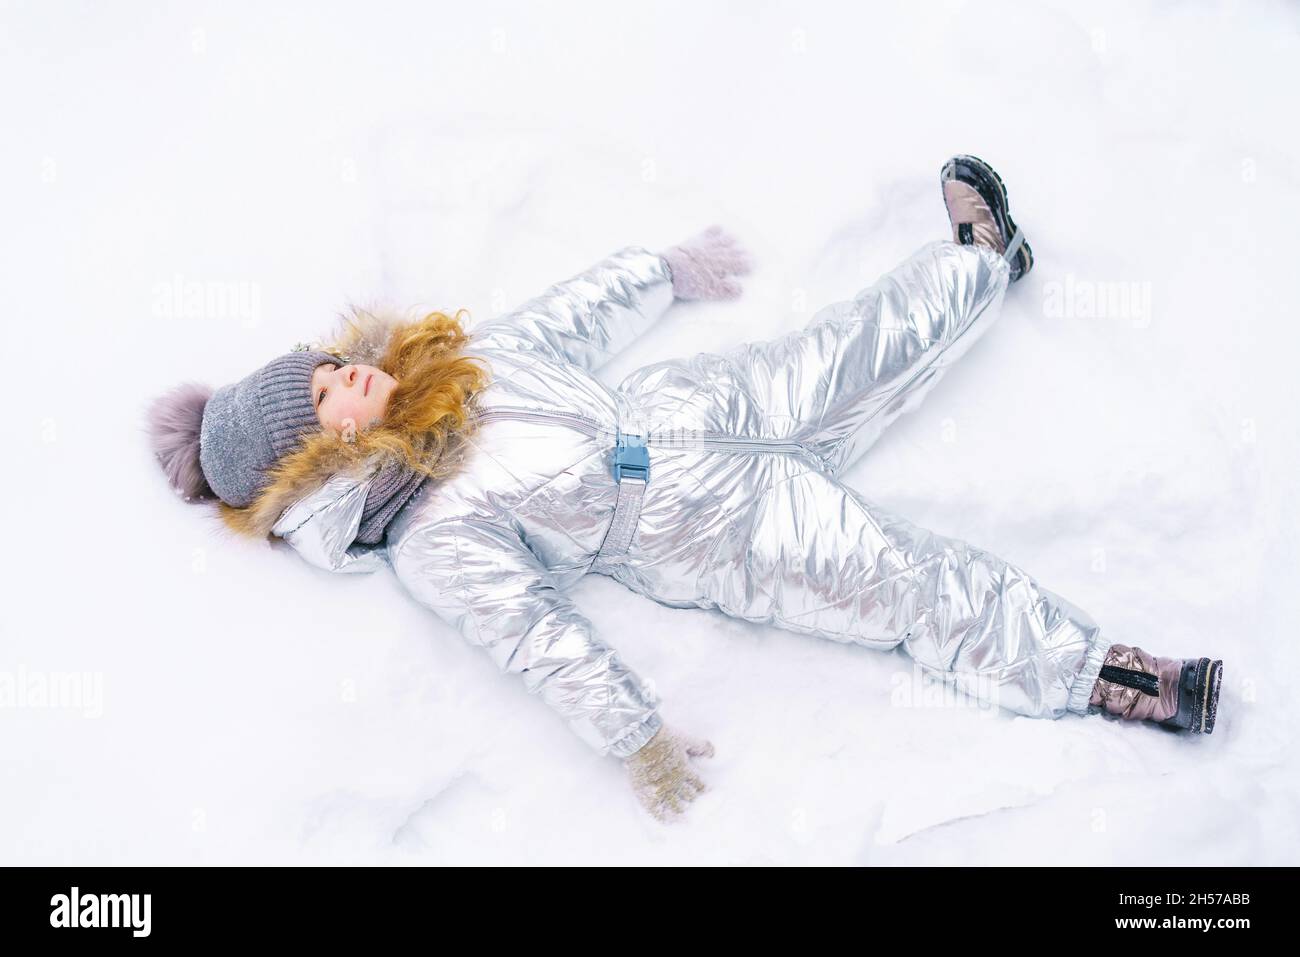 Mädchen spielt im Schnee. Das Kind liegt im Schnee und breitet seine Arme in Form eines Engels zur Seite aus. Glückliches kleines Mädchen in warmem silbernem Jumpsuit Stockfoto